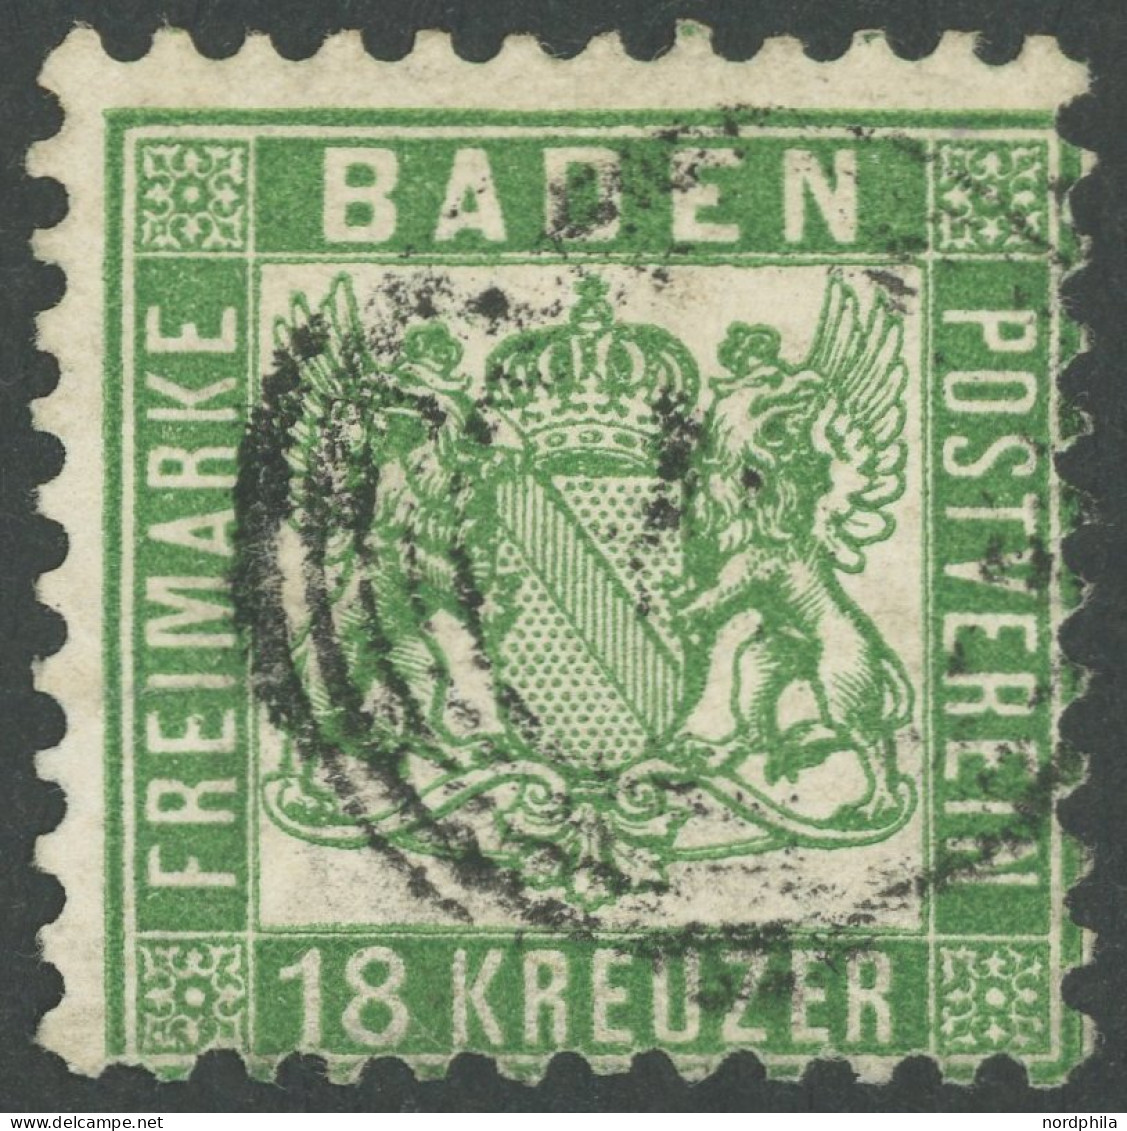 BADEN 21a O, 1862, 18 Kr. Grün, Einriss Links Geschlossen, Feinst, Kurzbefund Stegmüller, Mi. 700.- - Usati